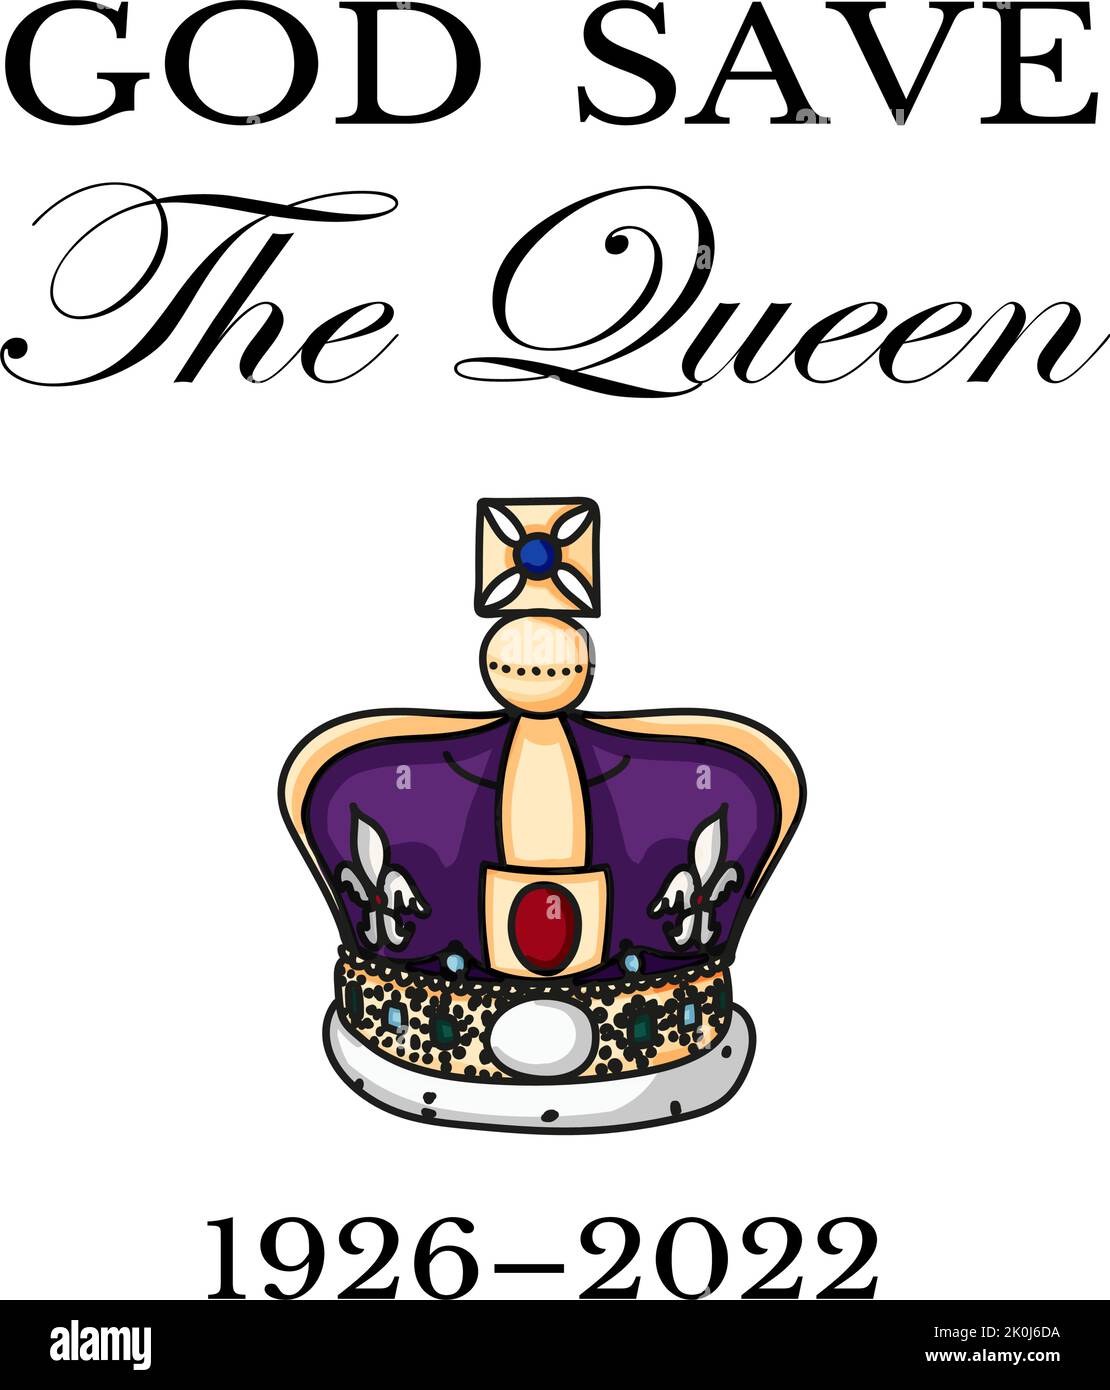 La mort de Queens. RIP, Dieu sauve la Reine. Affiche de repos dans la paix avec silhouette sur fond de drapeau. Illustration vectorielle pour sa Majesté sur ses 96 années de service 1926 - 2022 Illustration de Vecteur